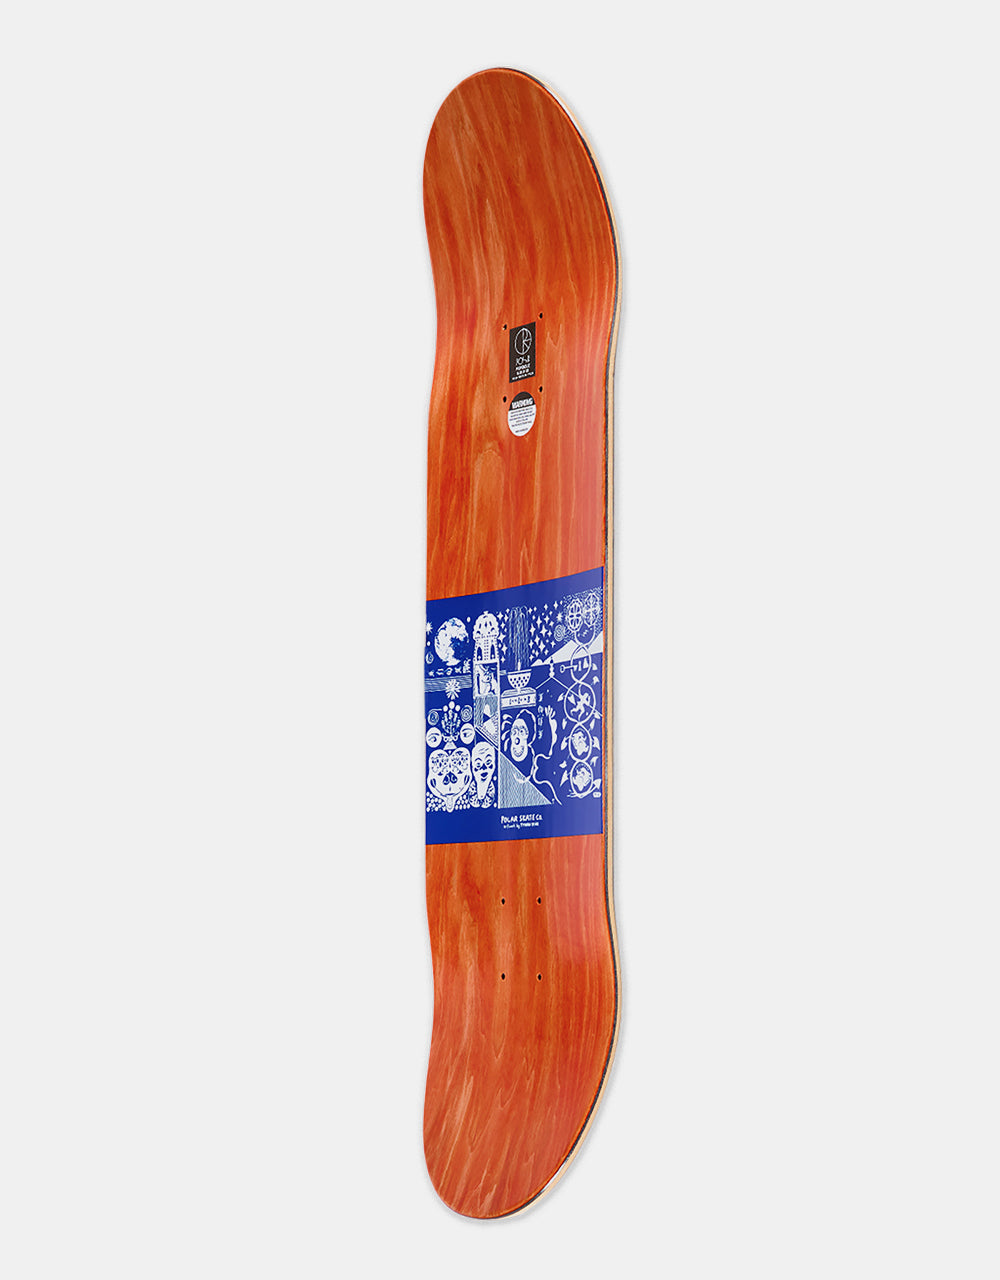 Polar Shin Sanbongi The Spiral of Life Skateboard Deck - Black